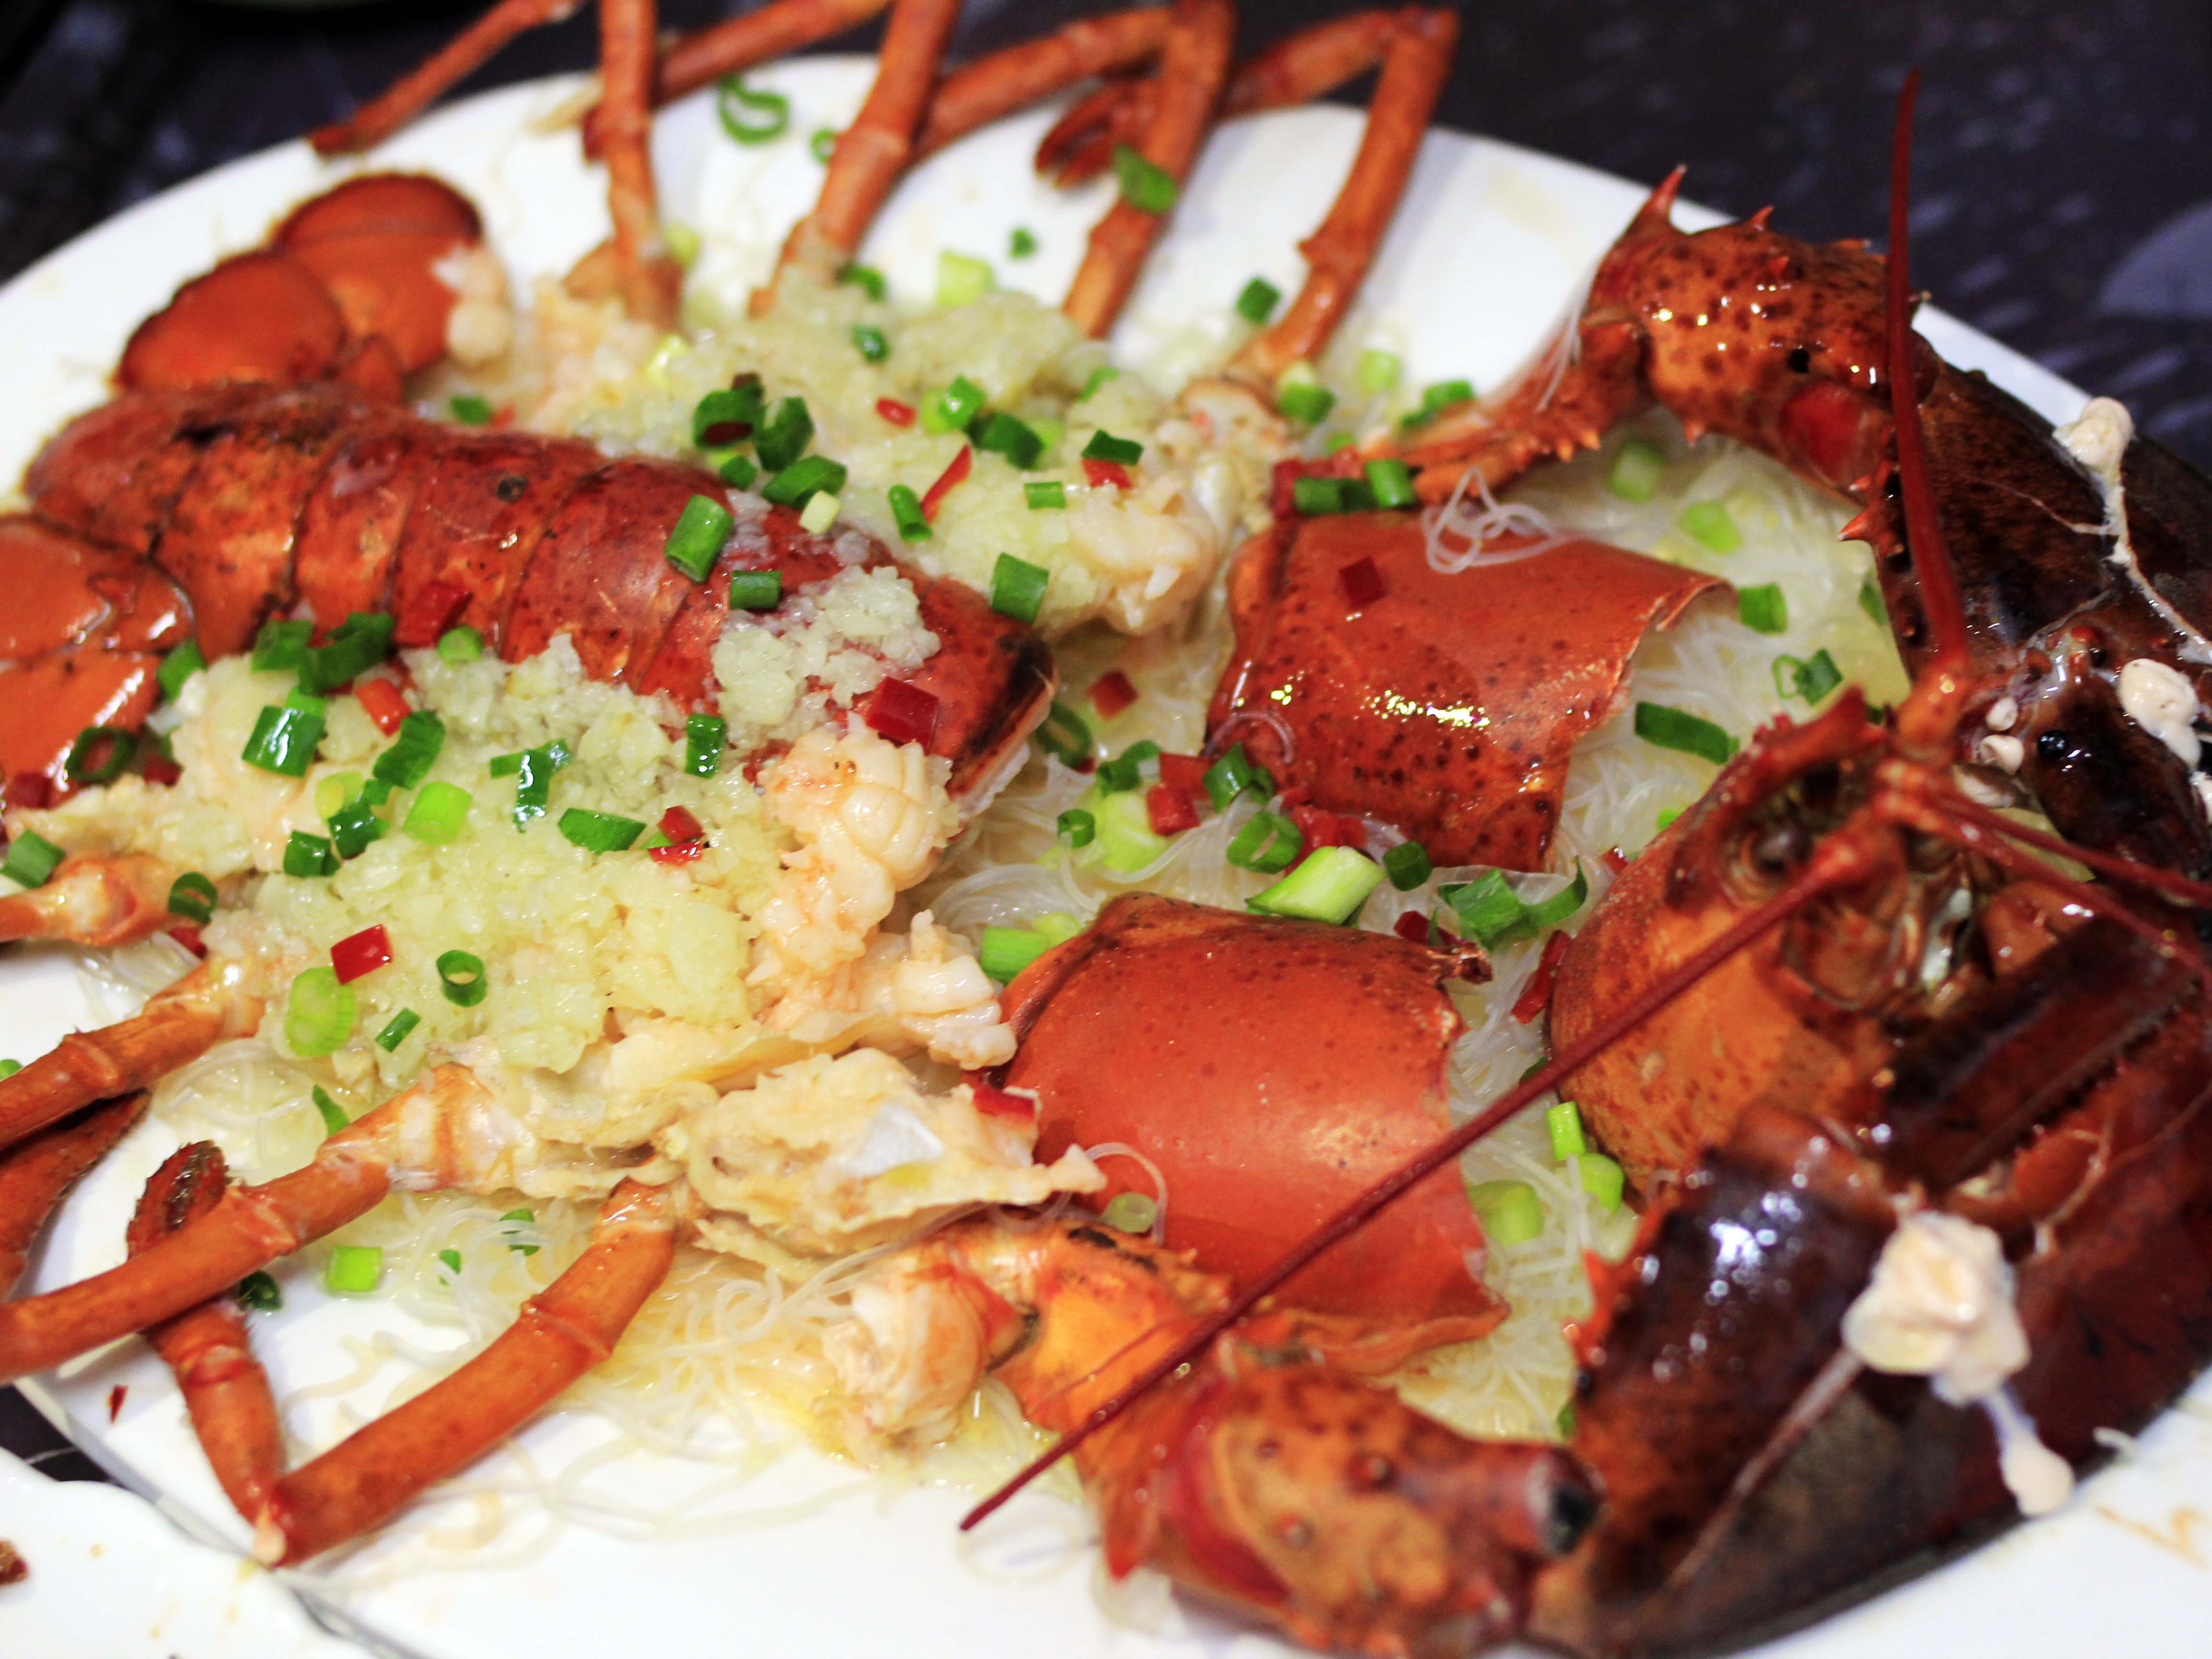 波士顿大龙虾肉质结实在上上铺上一层蒜蓉提味是恰到好处,新鲜美味